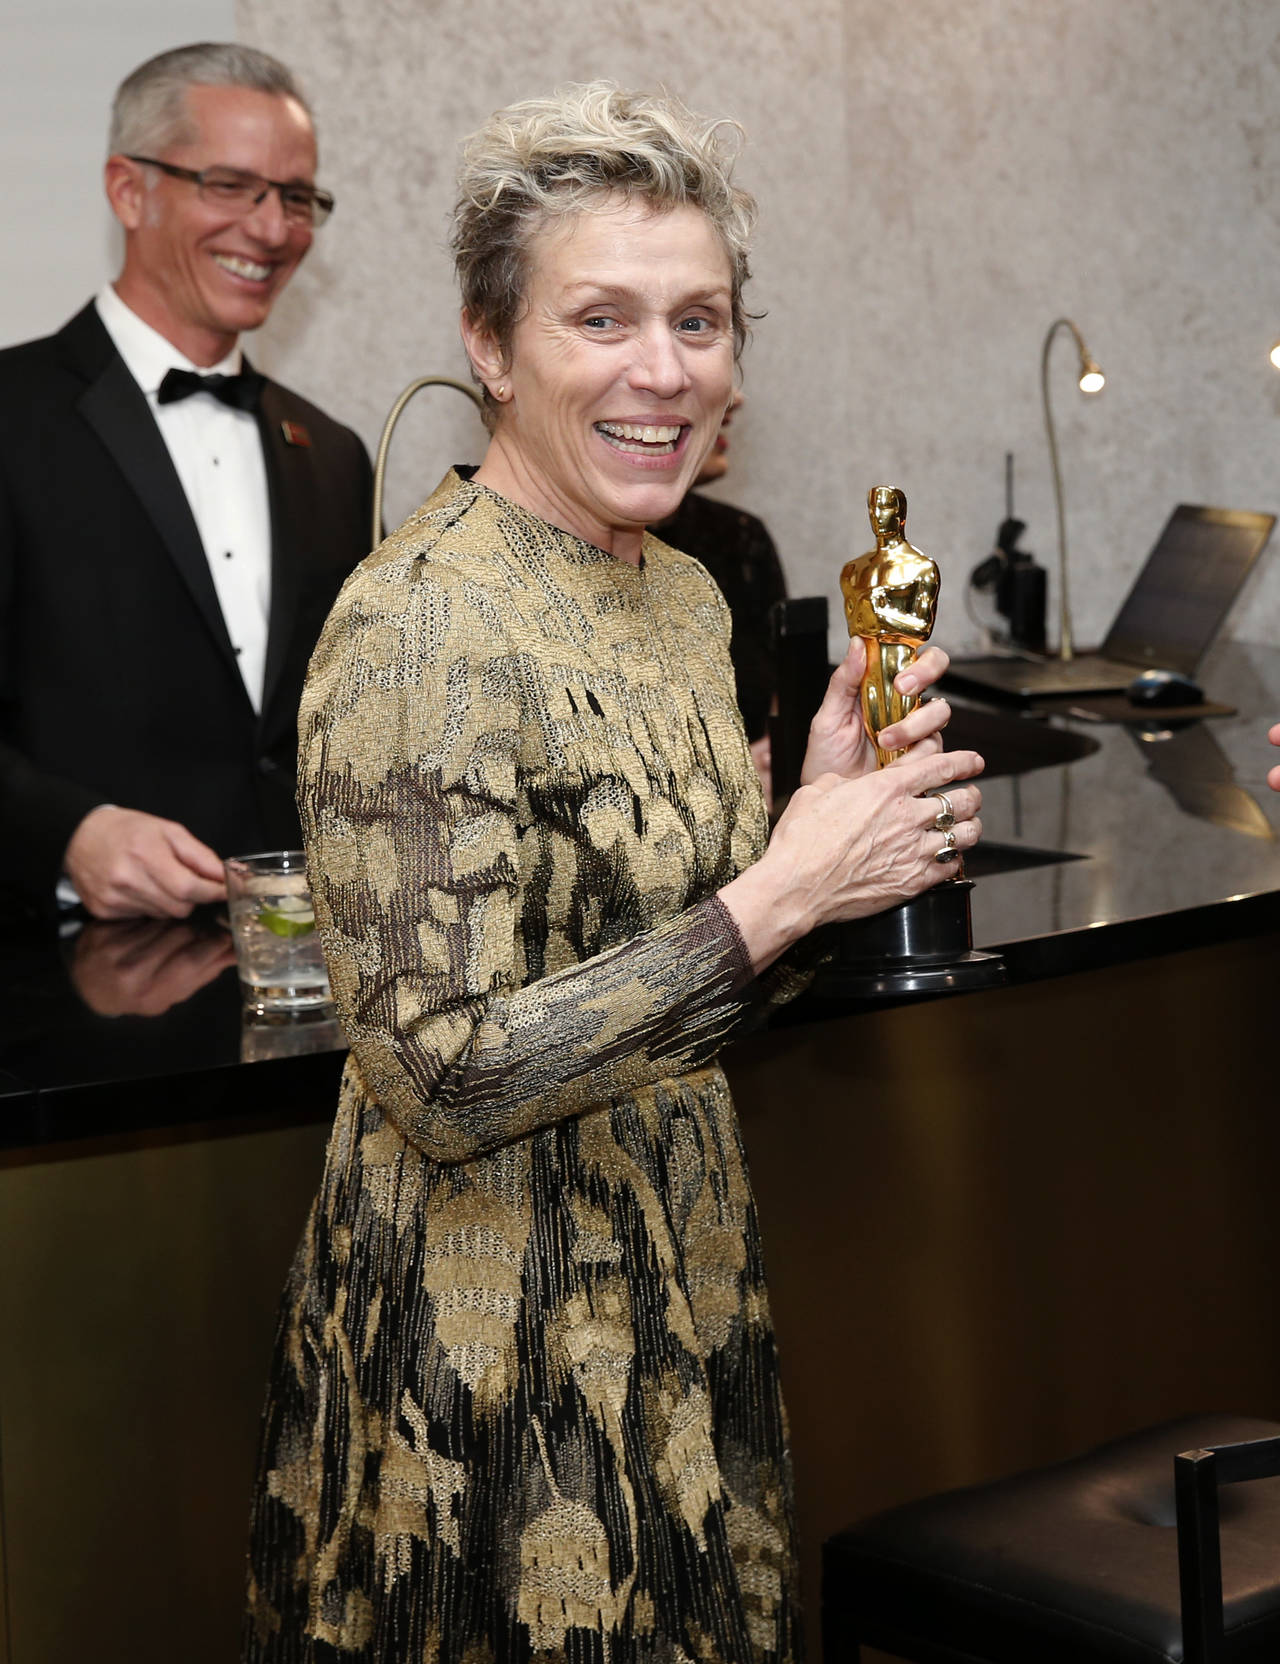  Un hombre fue arrestado y está acusado de robar la estatuilla de los Oscar de Frances McDormand tras los Premios de la Academia el domingo por la noche. (ARCHIVO)